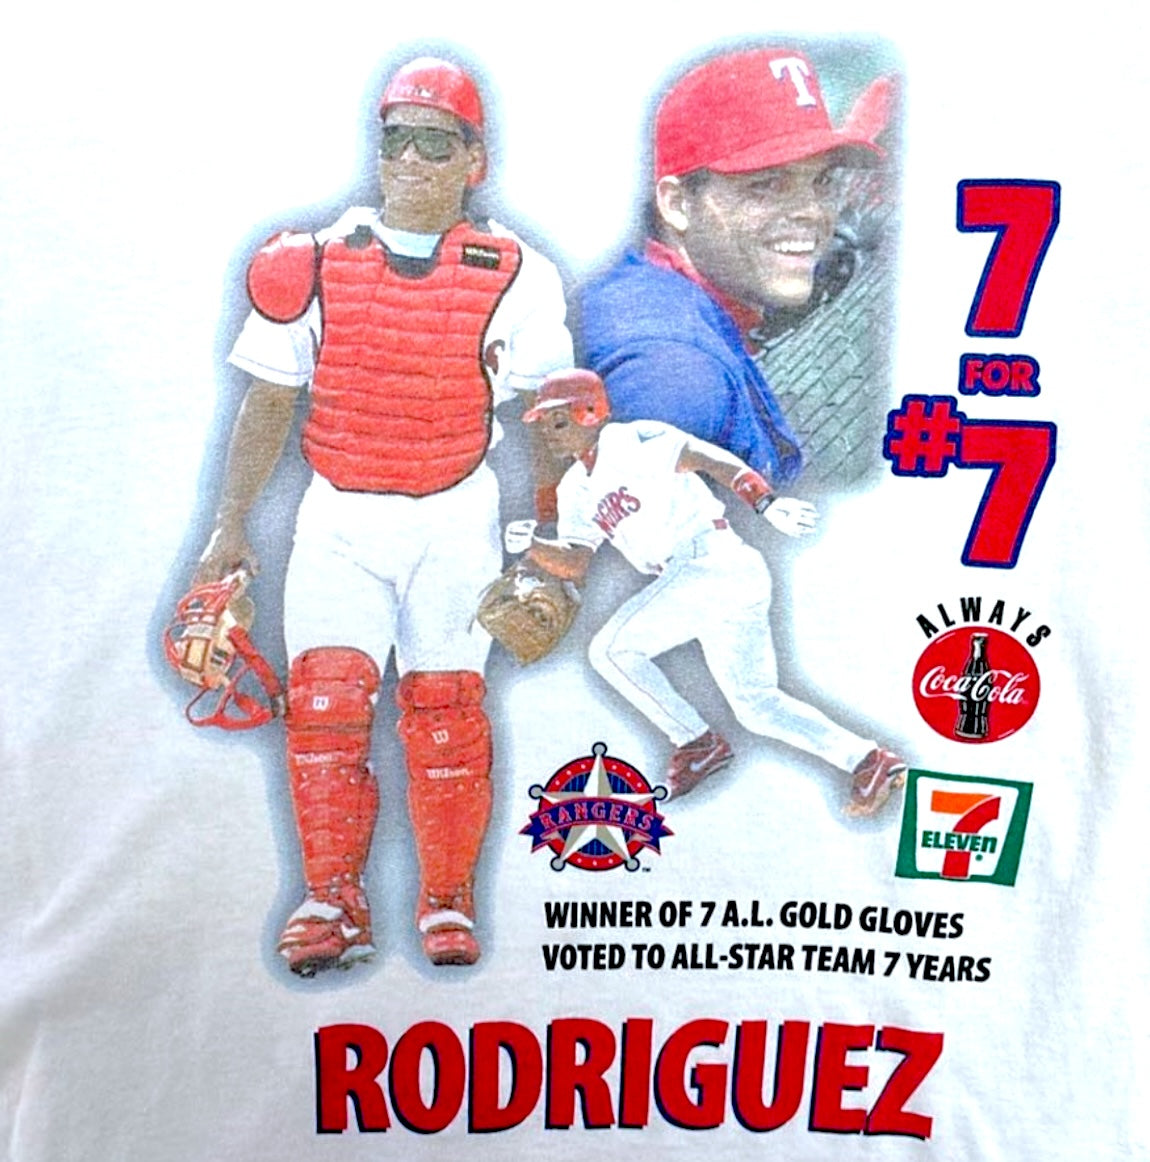 Ivan Rodriguez Texas Rangers 7-11 / Coca-Cola